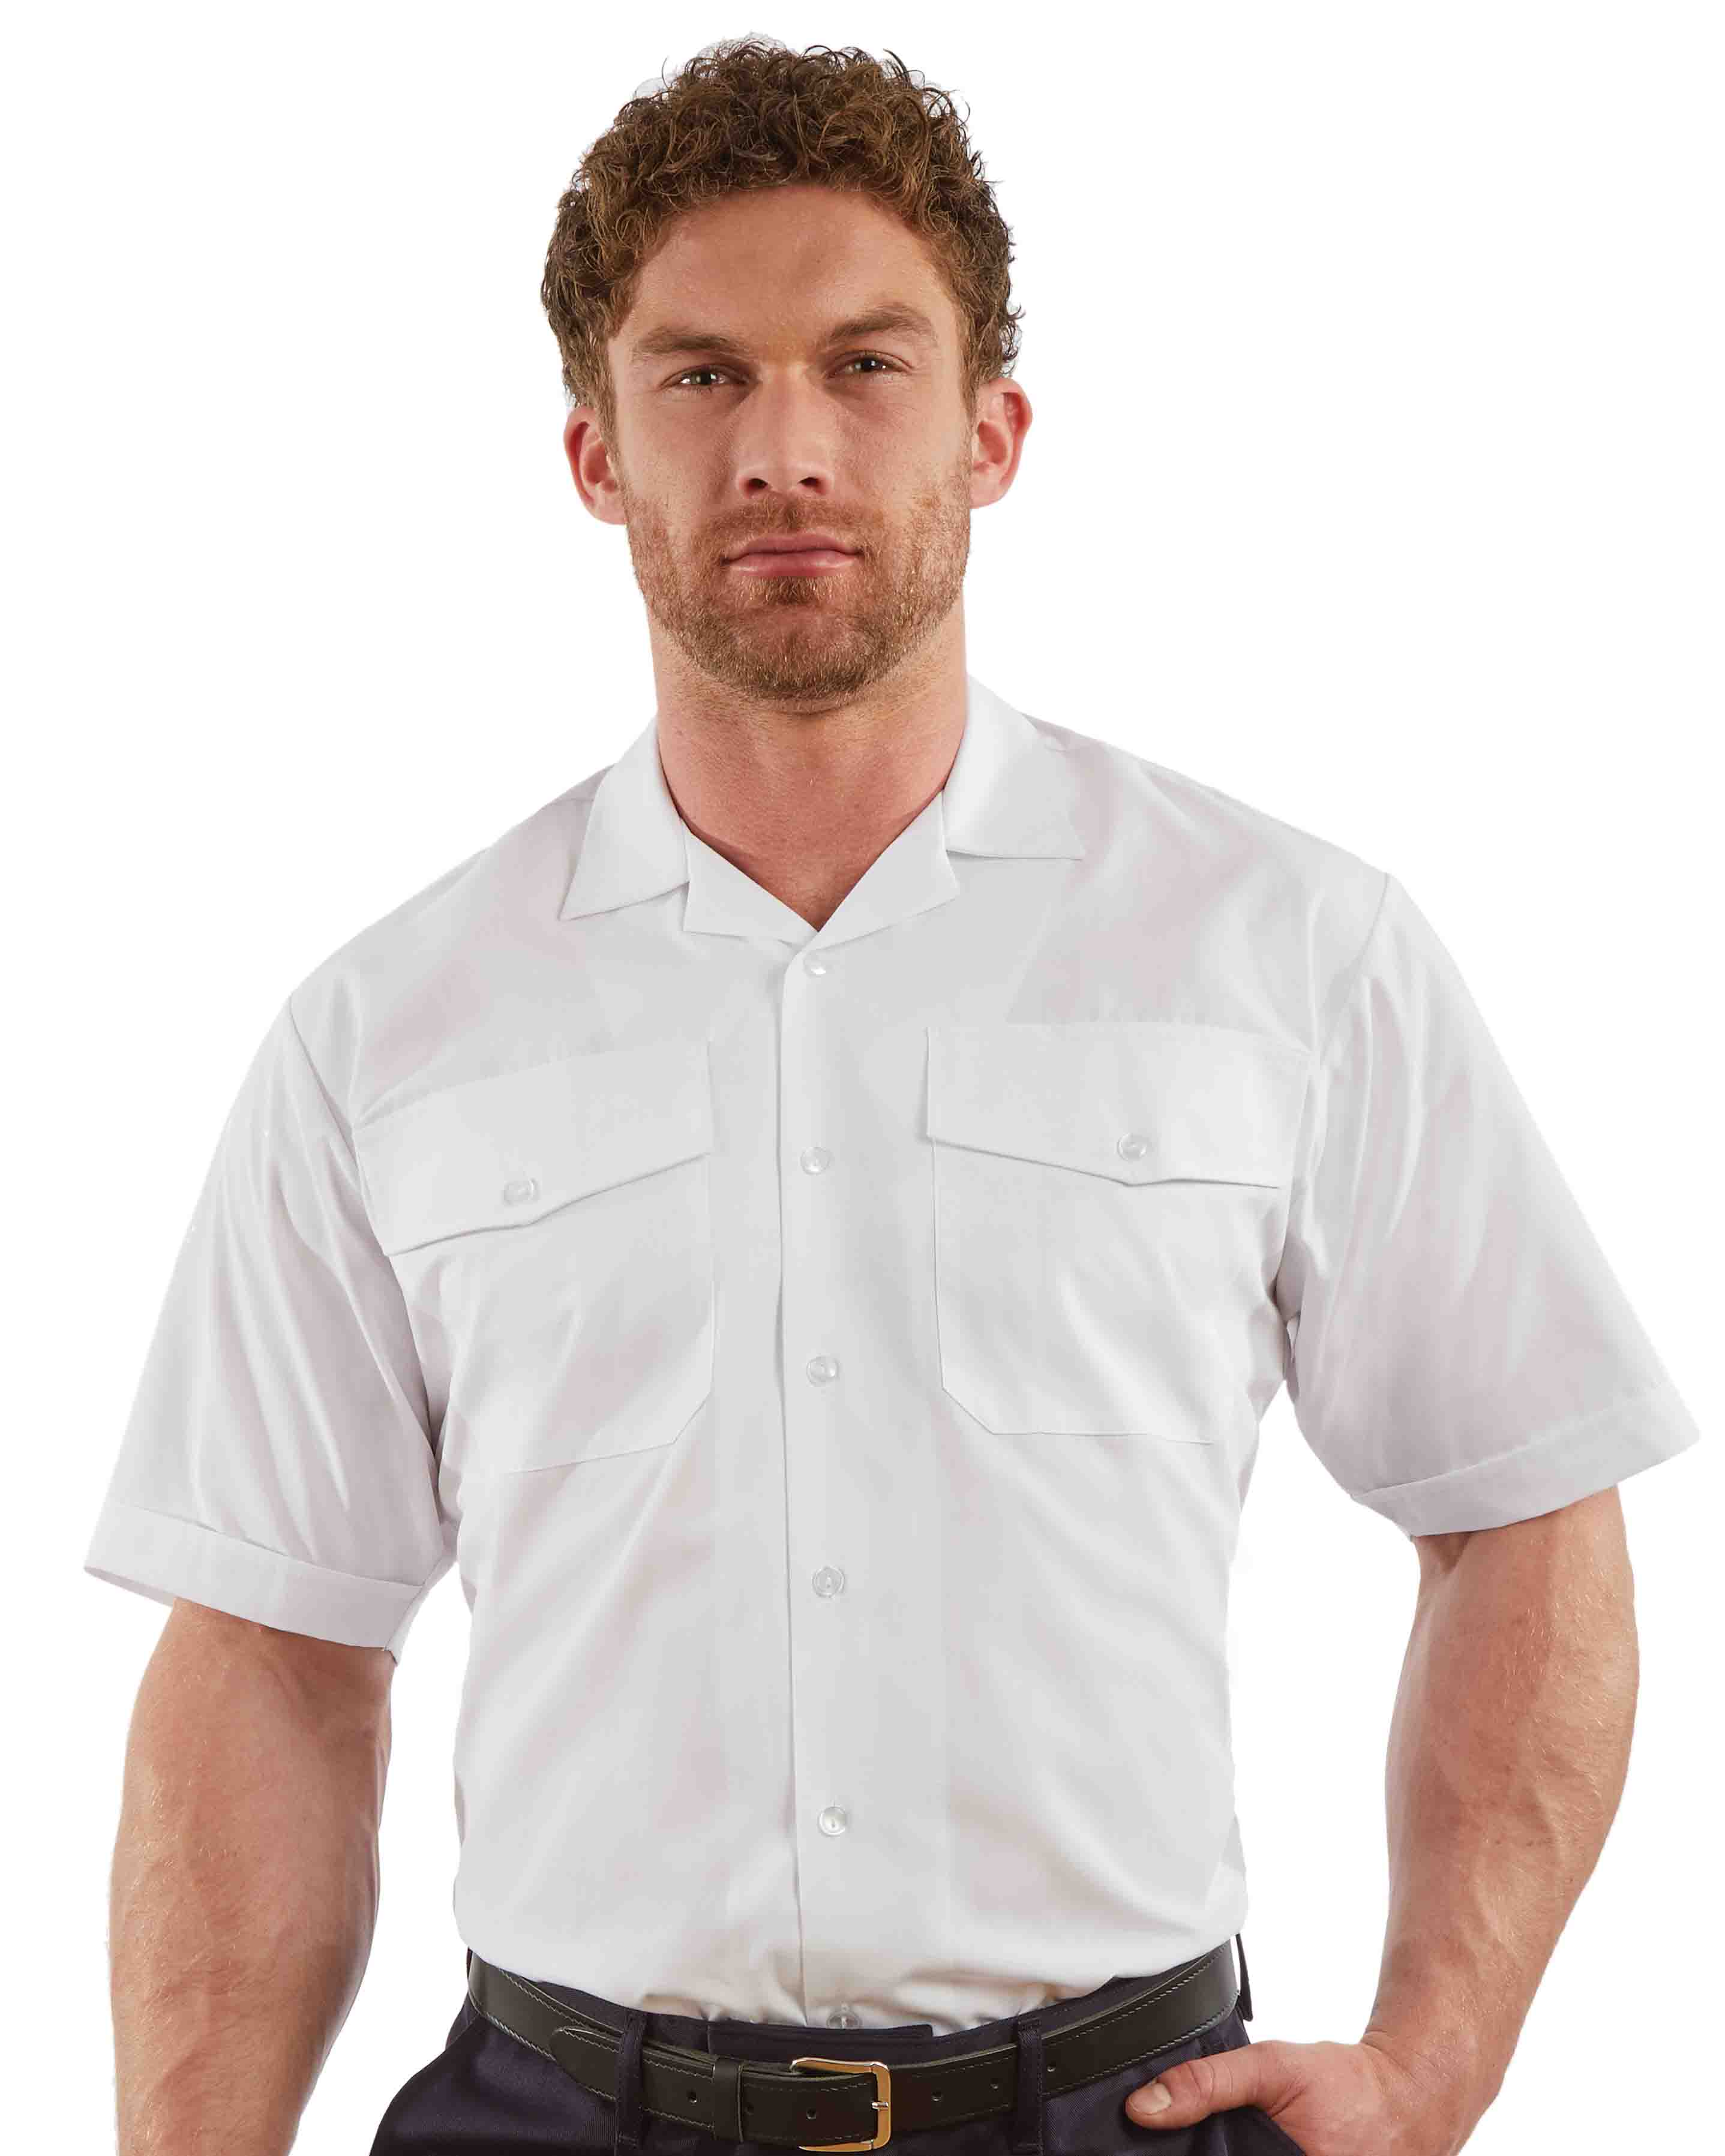 Men’s Lightweight Short Sleeve Fire Shirt – White